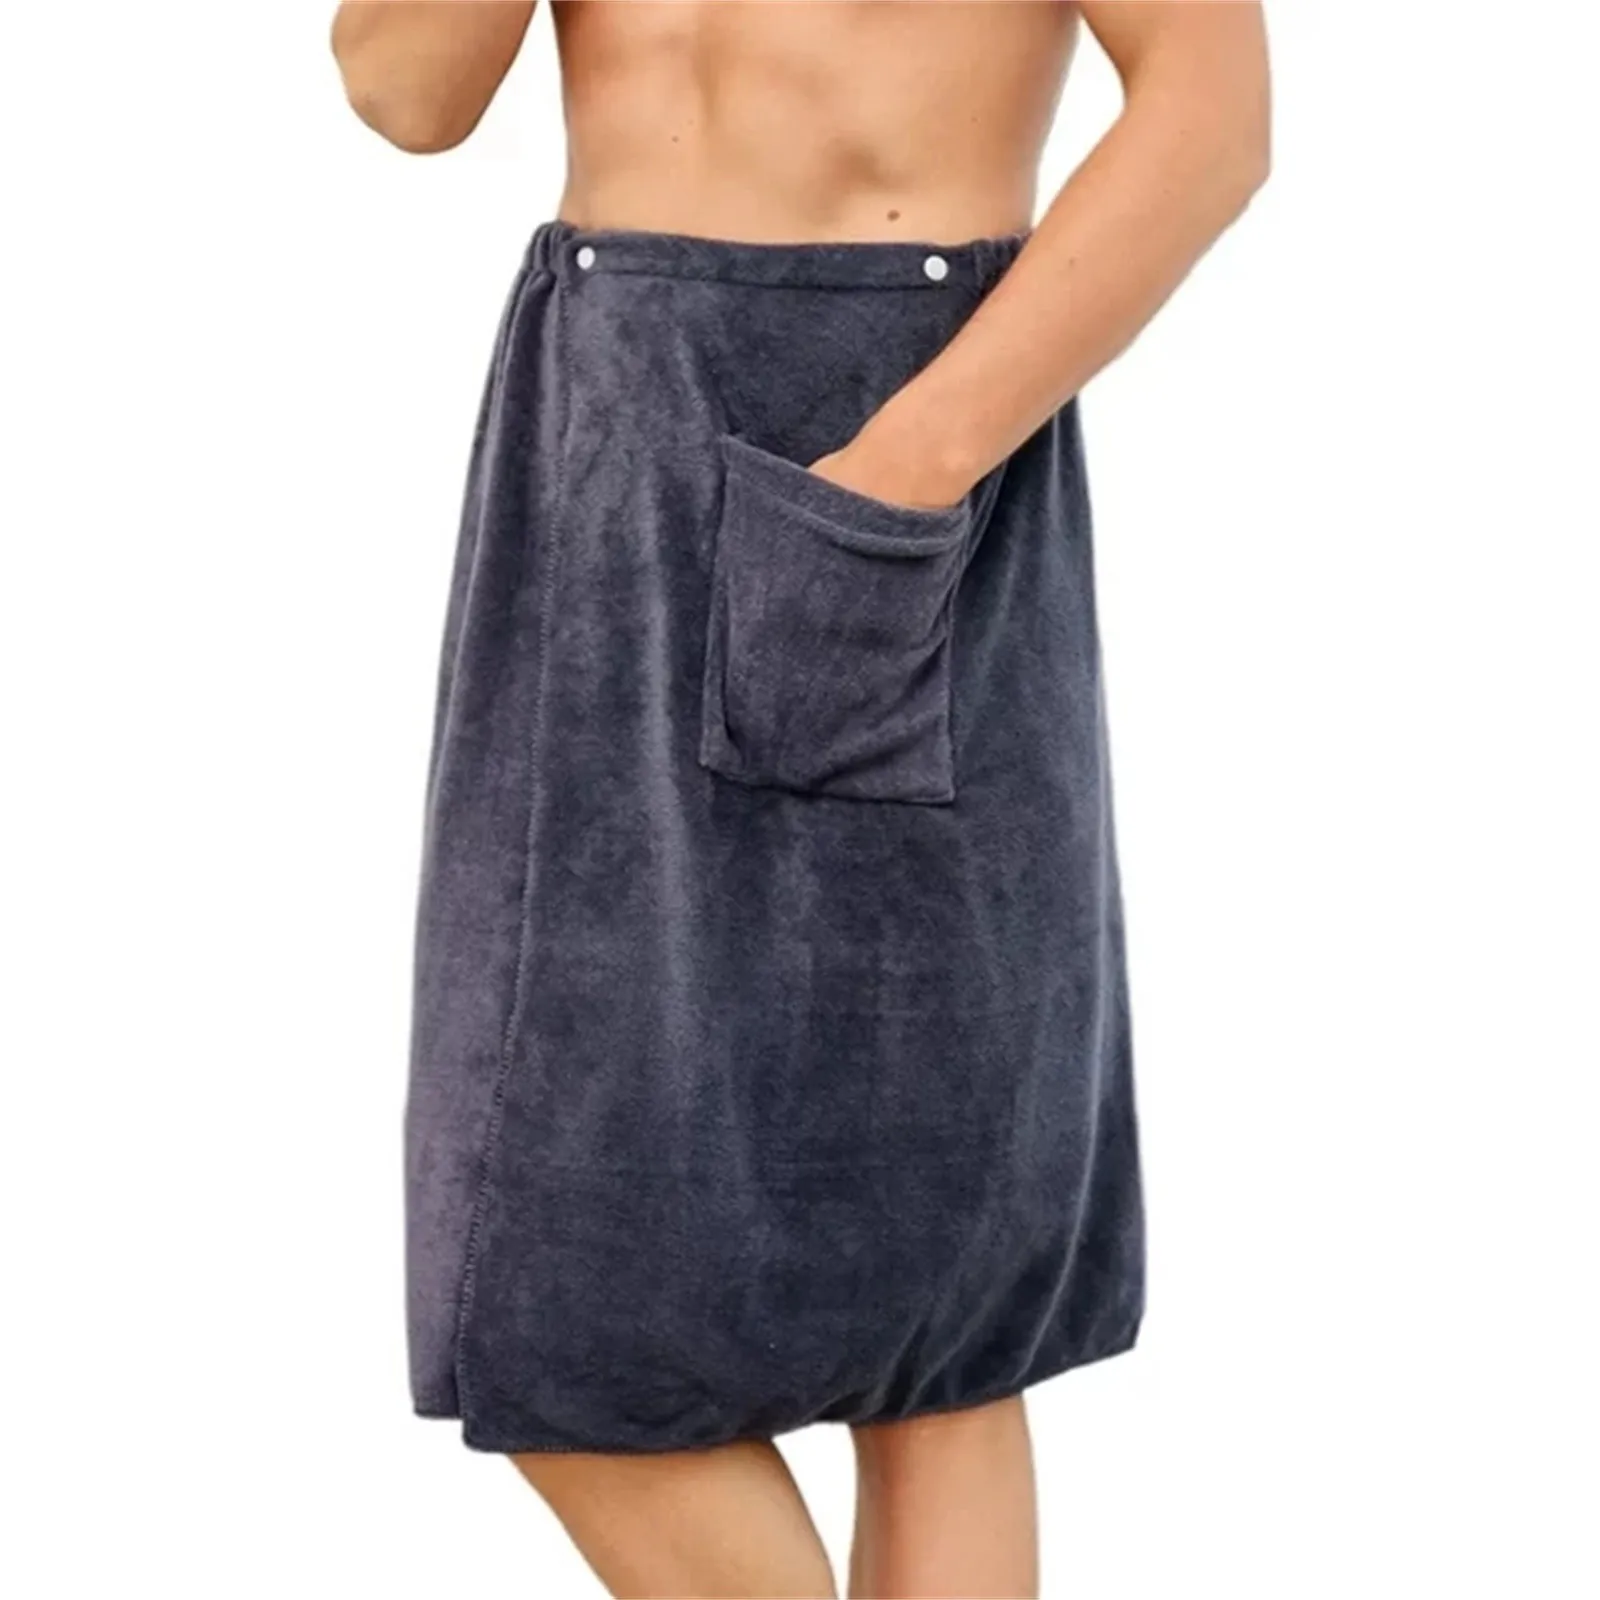 Erkek Giyilebilir banyo havlusu dalgıç giysisi Erkekler için Erkek dalış elbisesi Erkek dalış elbisesi s 5mm dalış elbisesi Erkekler için Soğuk Su Ön Zip 5mm Görüntü 1